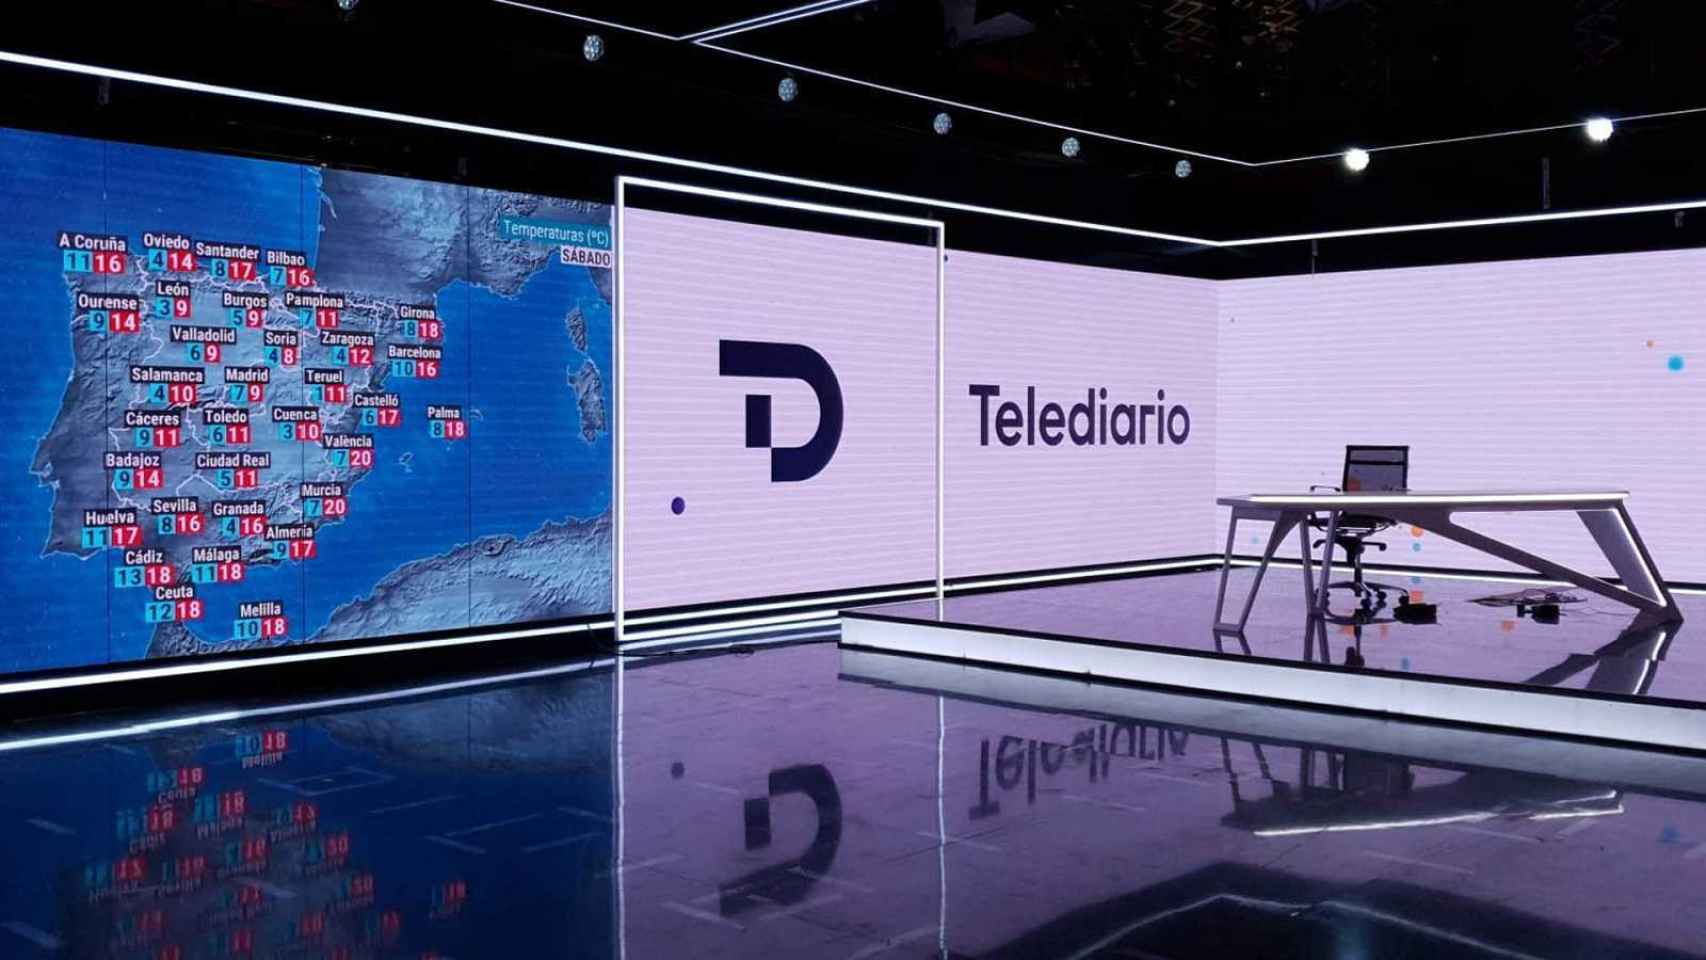 Imagen del nuevo decorado del 'Telediario' adelantada por TVE.